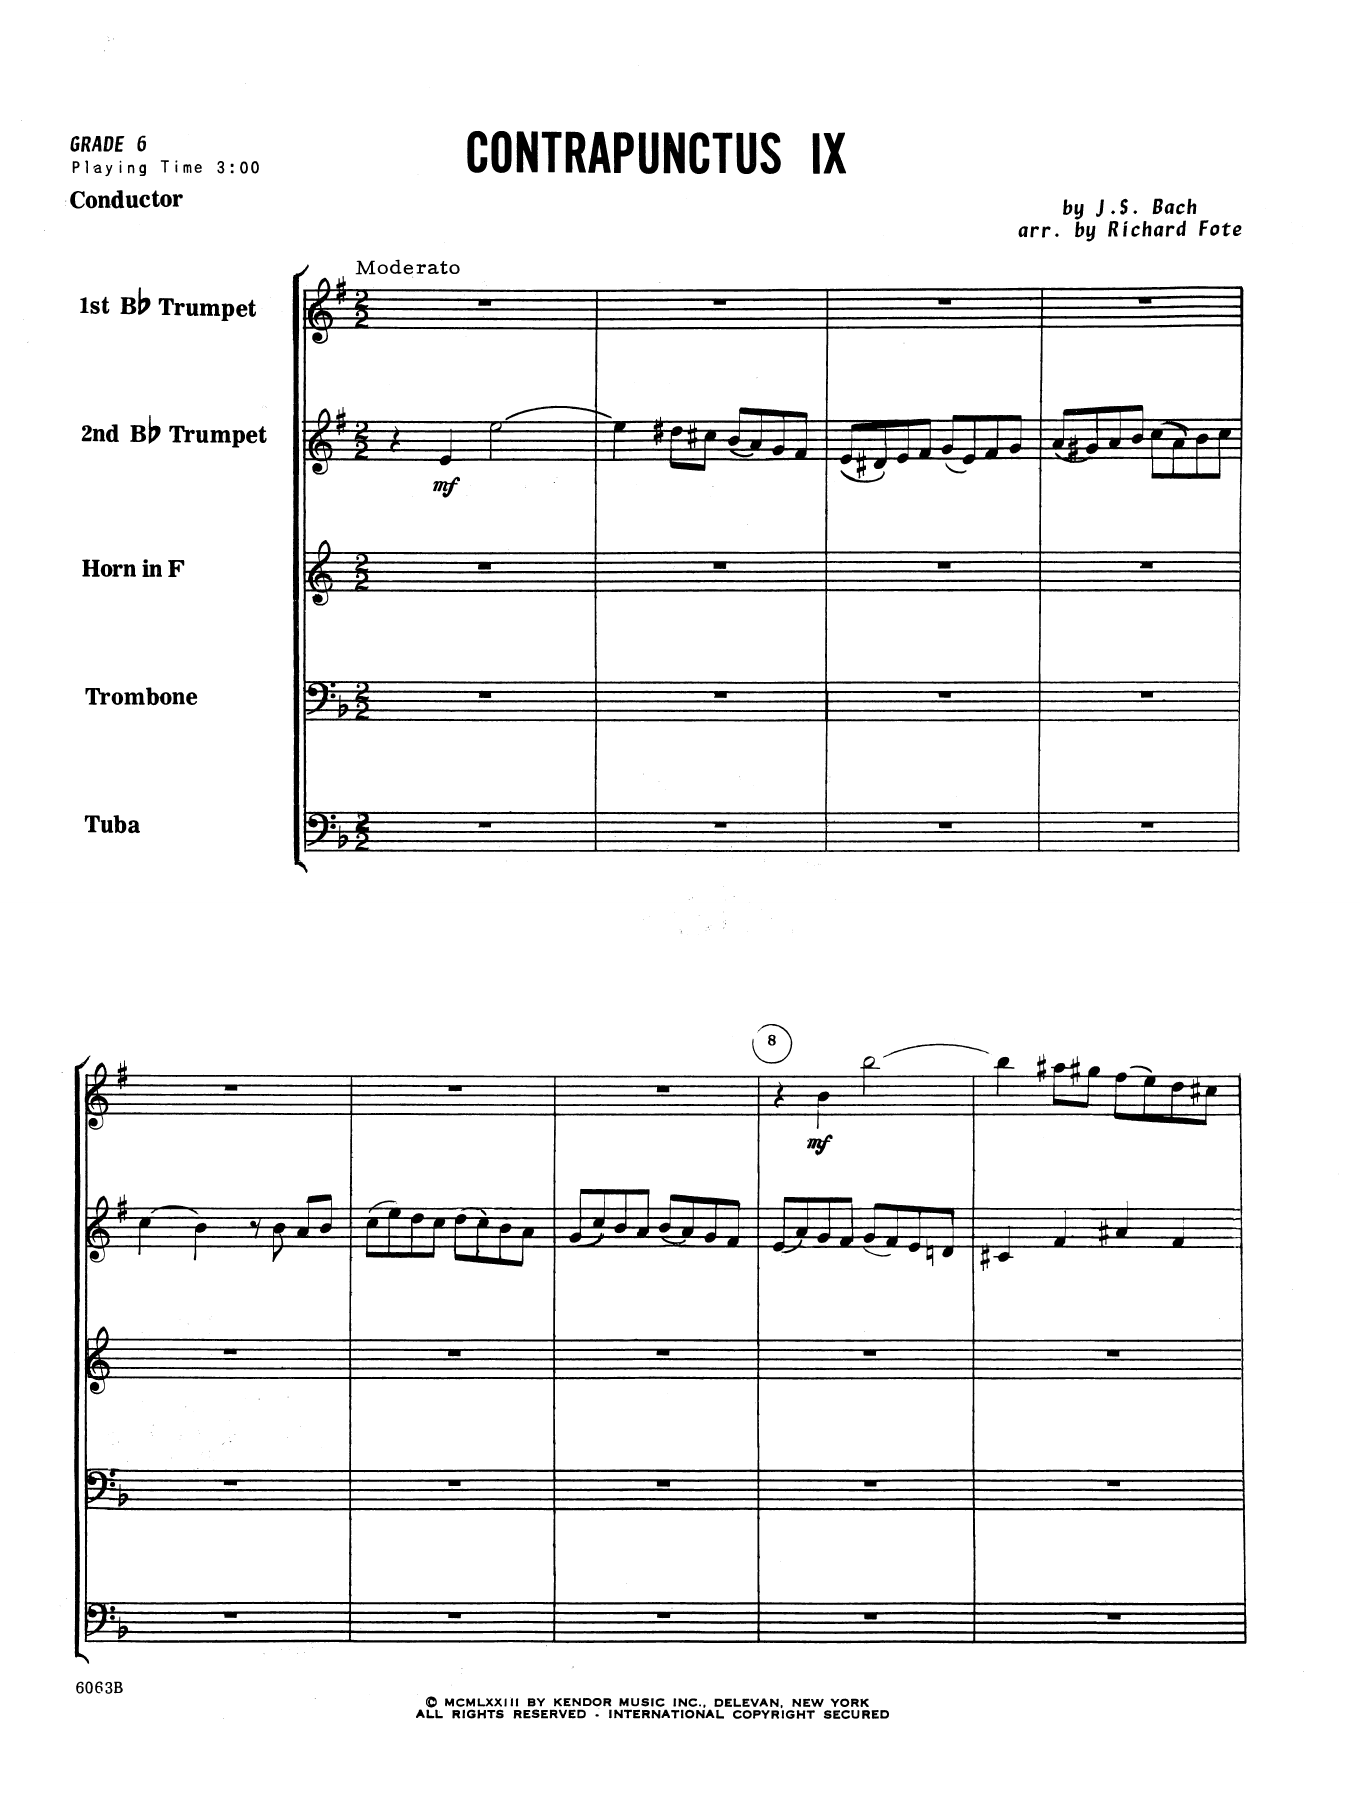 Download J.S. Bach Contrapunctus IX (arr. Richard Fote) - Sheet Music